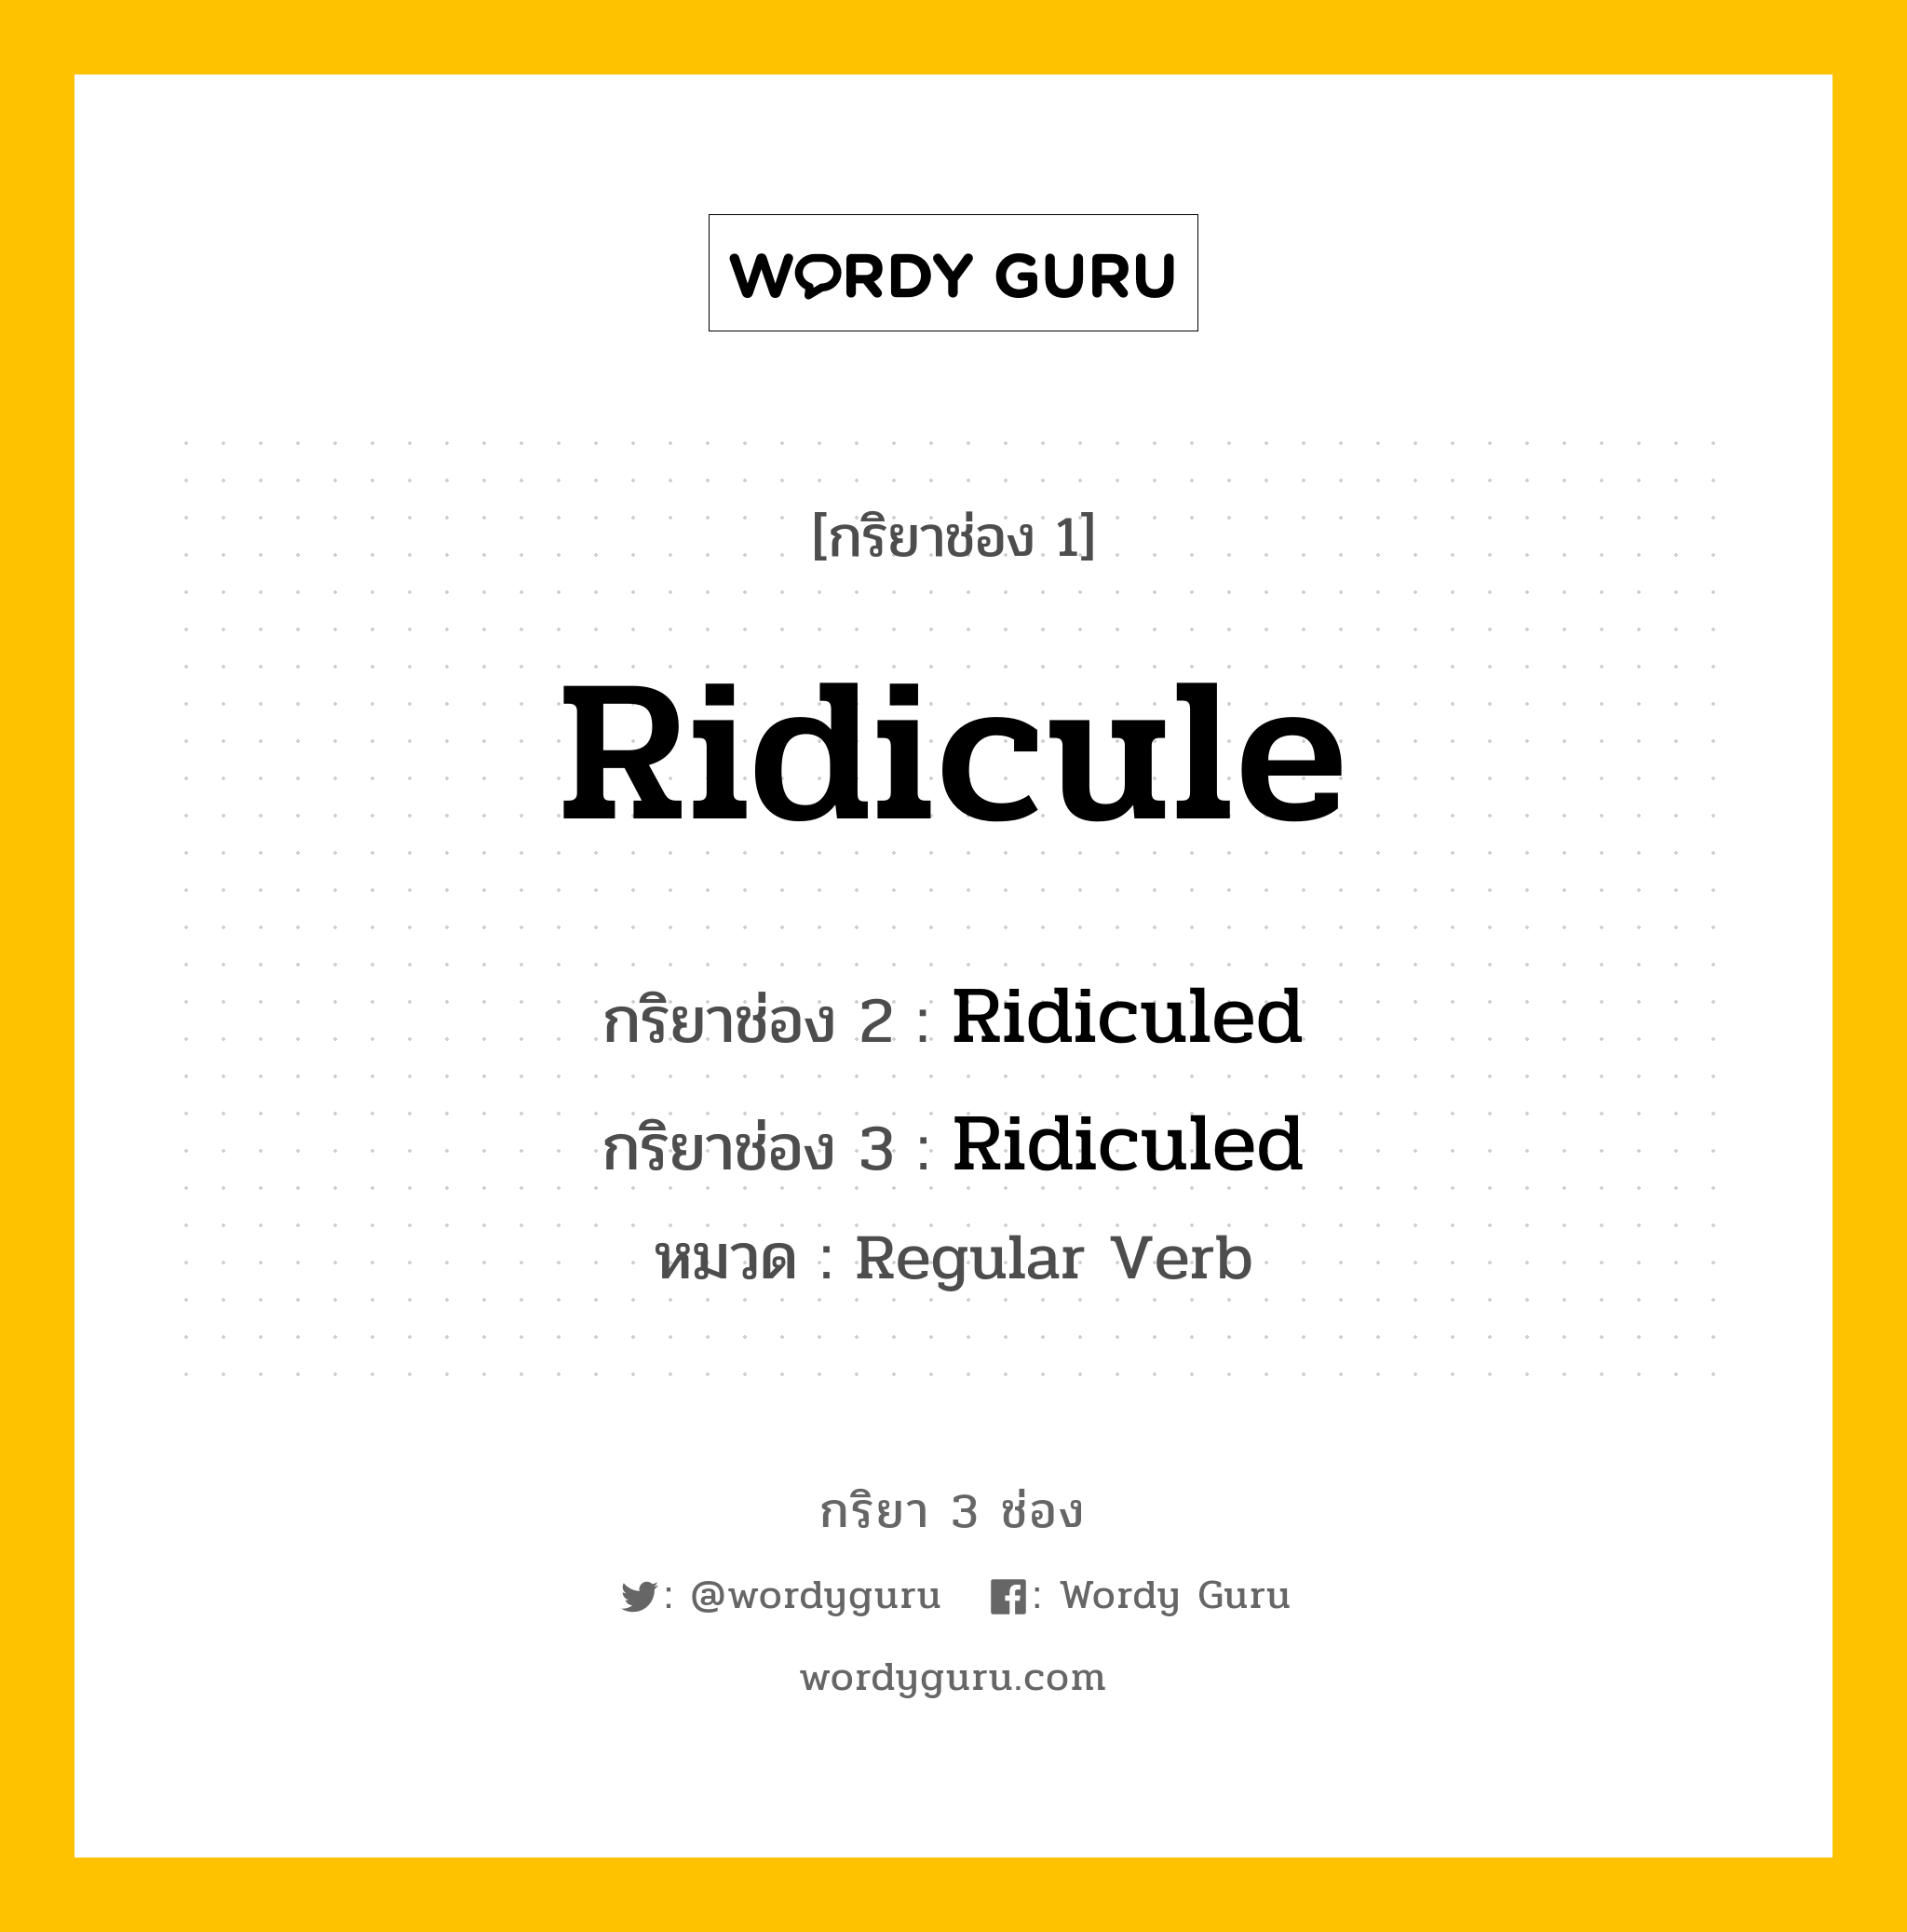 กริยา 3 ช่อง: Ridicule ช่อง 2 Ridicule ช่อง 3 คืออะไร, กริยาช่อง 1 Ridicule กริยาช่อง 2 Ridiculed กริยาช่อง 3 Ridiculed หมวด Regular Verb หมวด Regular Verb